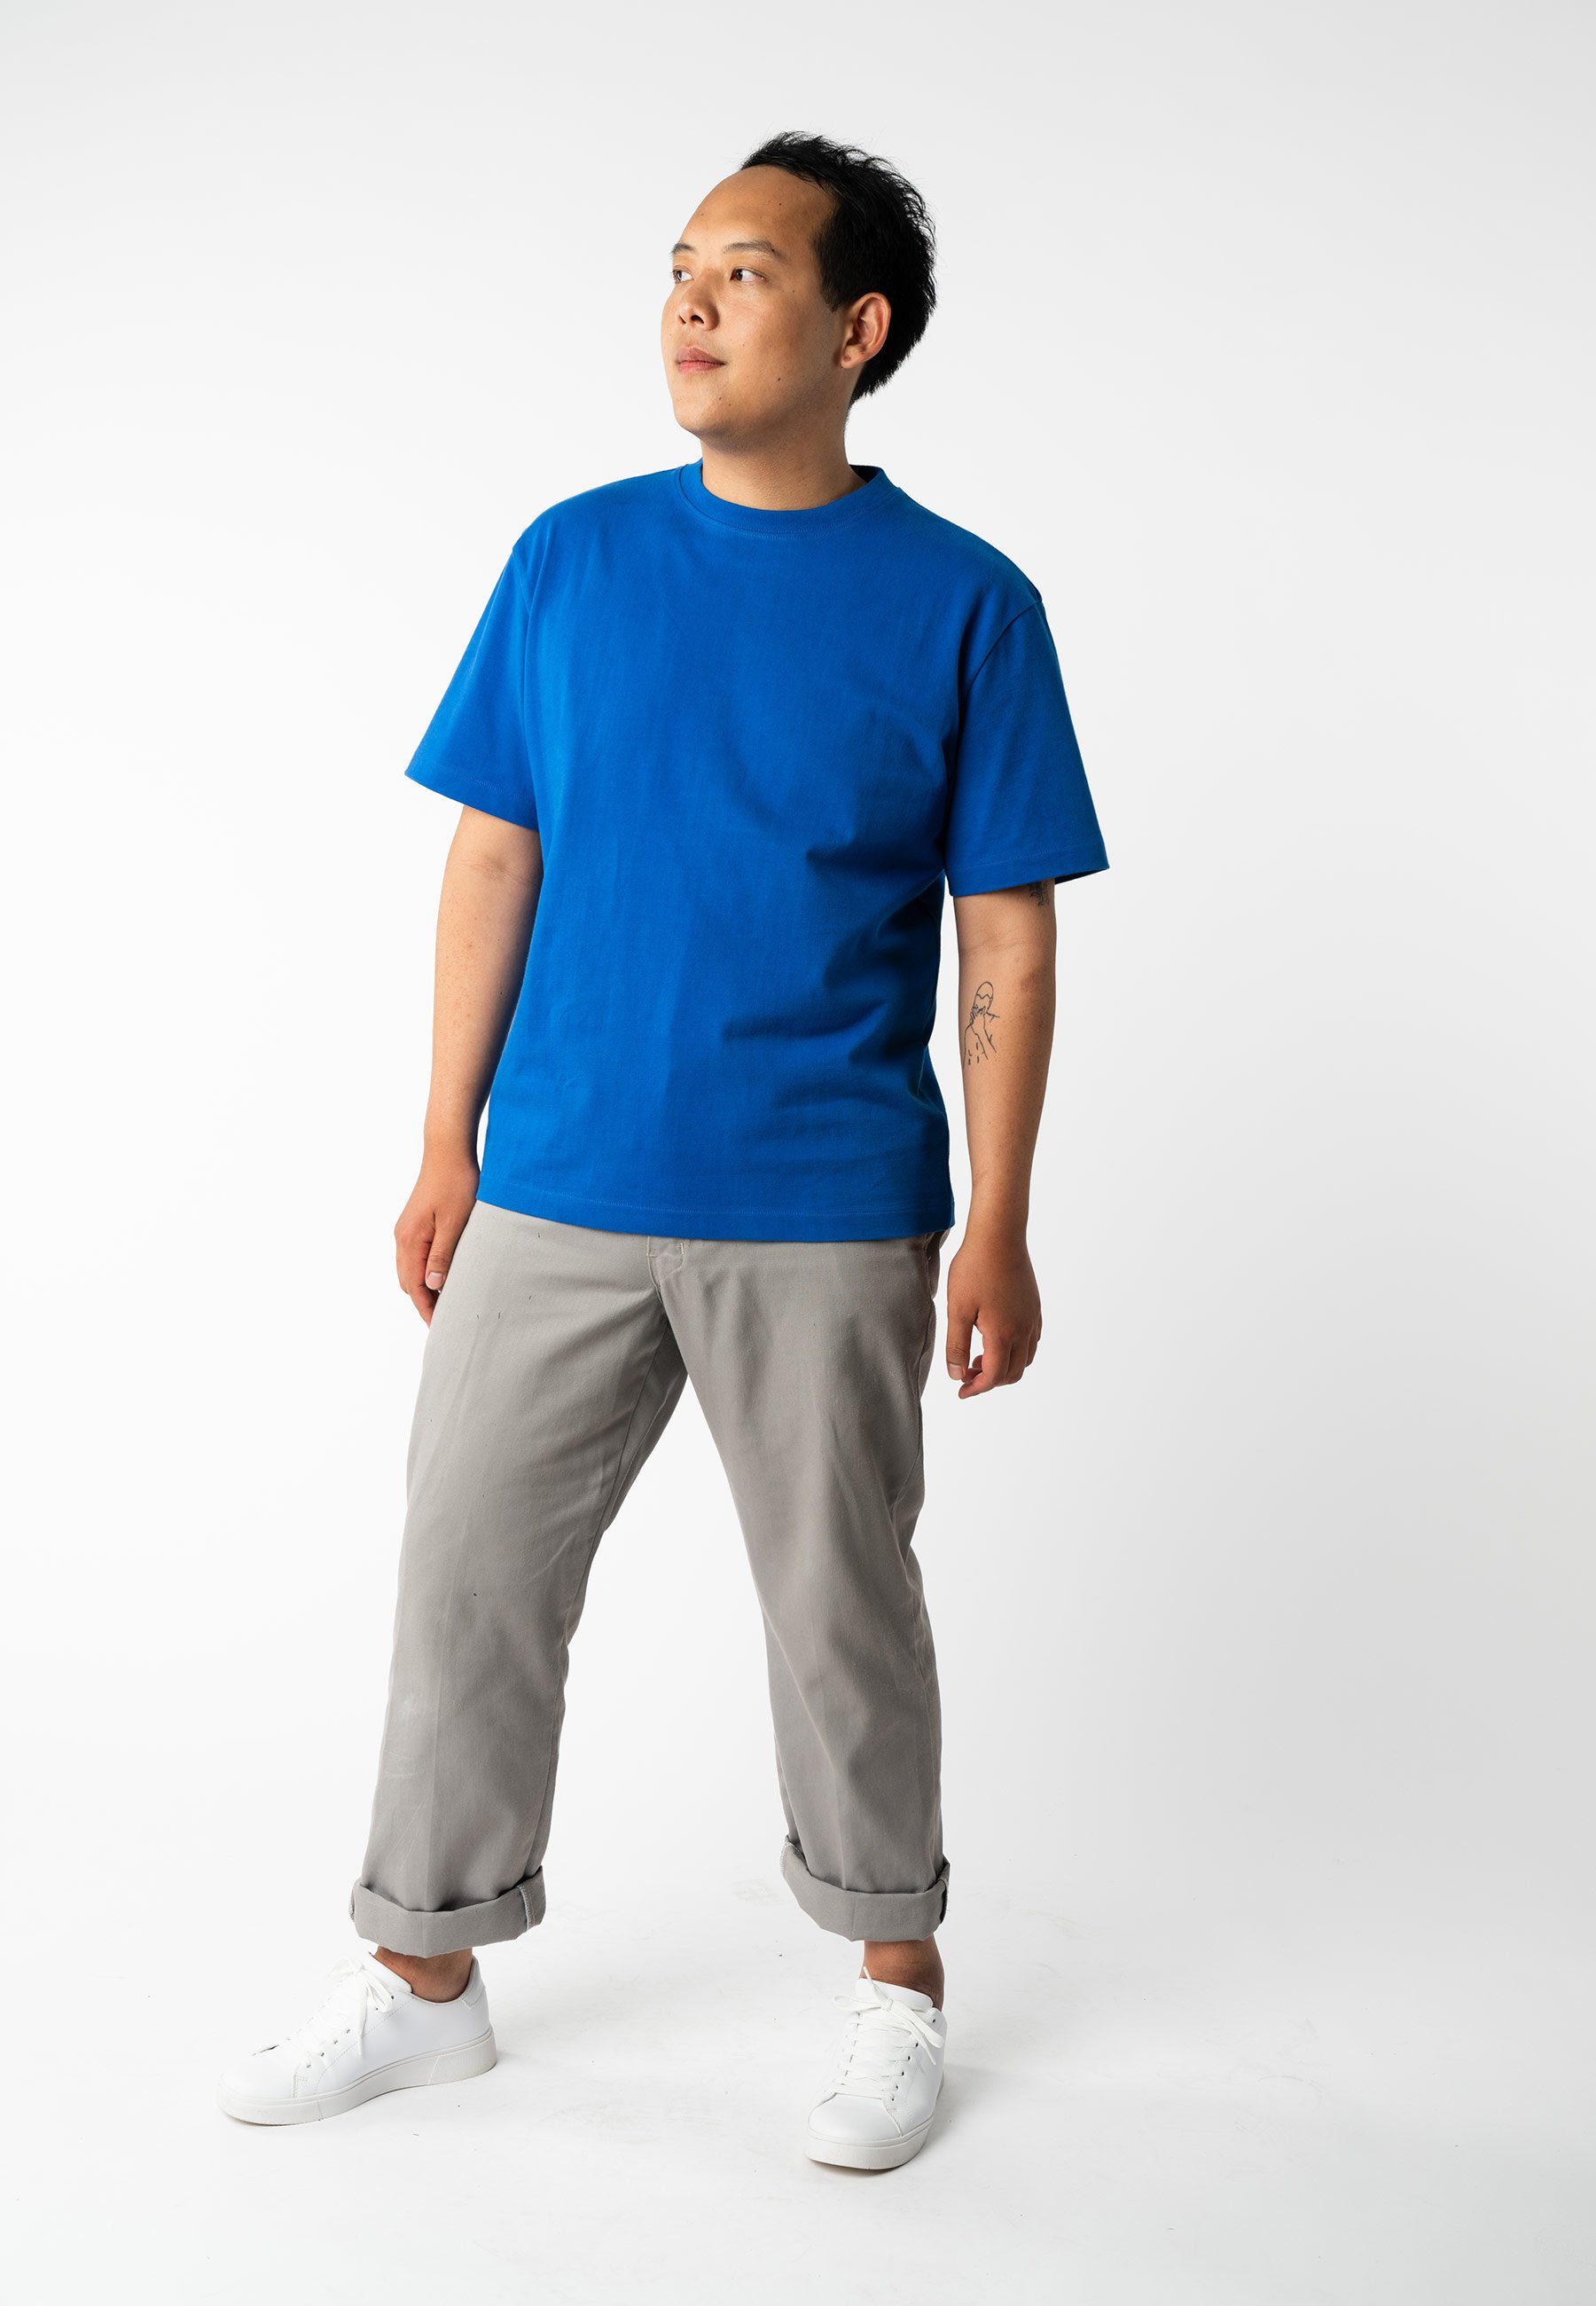 BHAJAN schwer Rippbündchen T-Shirt blue MELA vibrant Kurzarmshirt